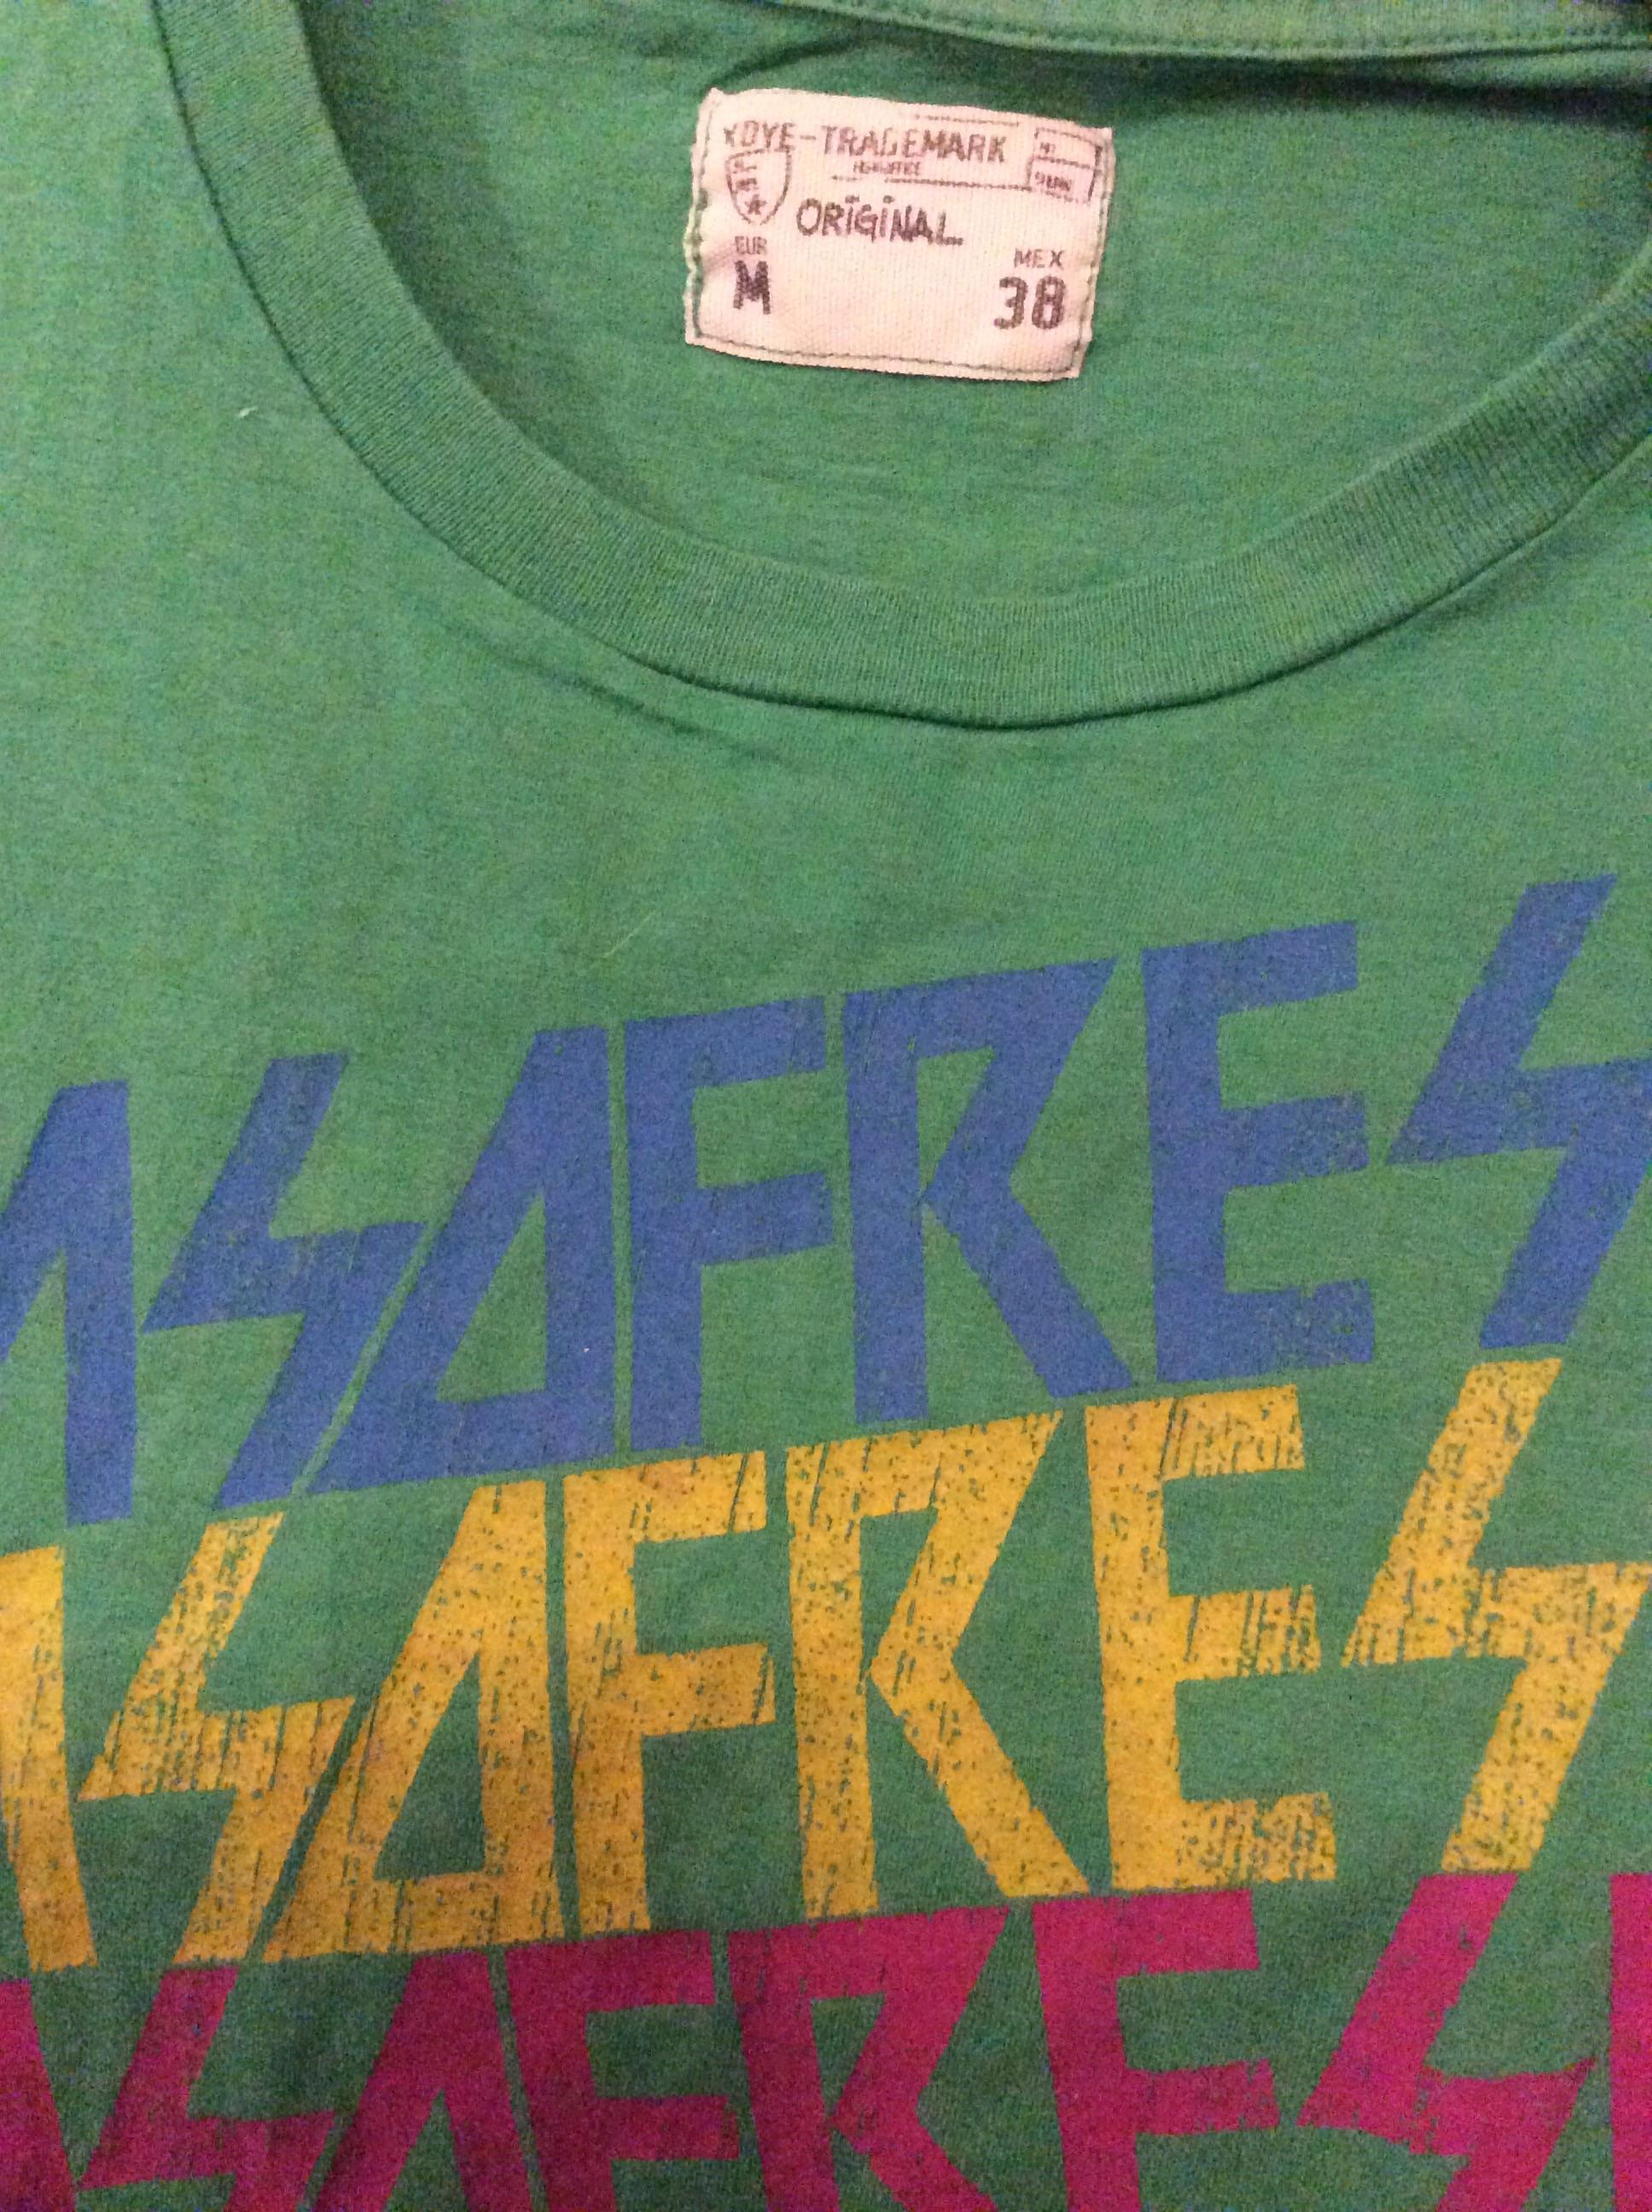 troc de troc réserve ff t-shirt xdye trademark vert taille m38  manches courtes image 1